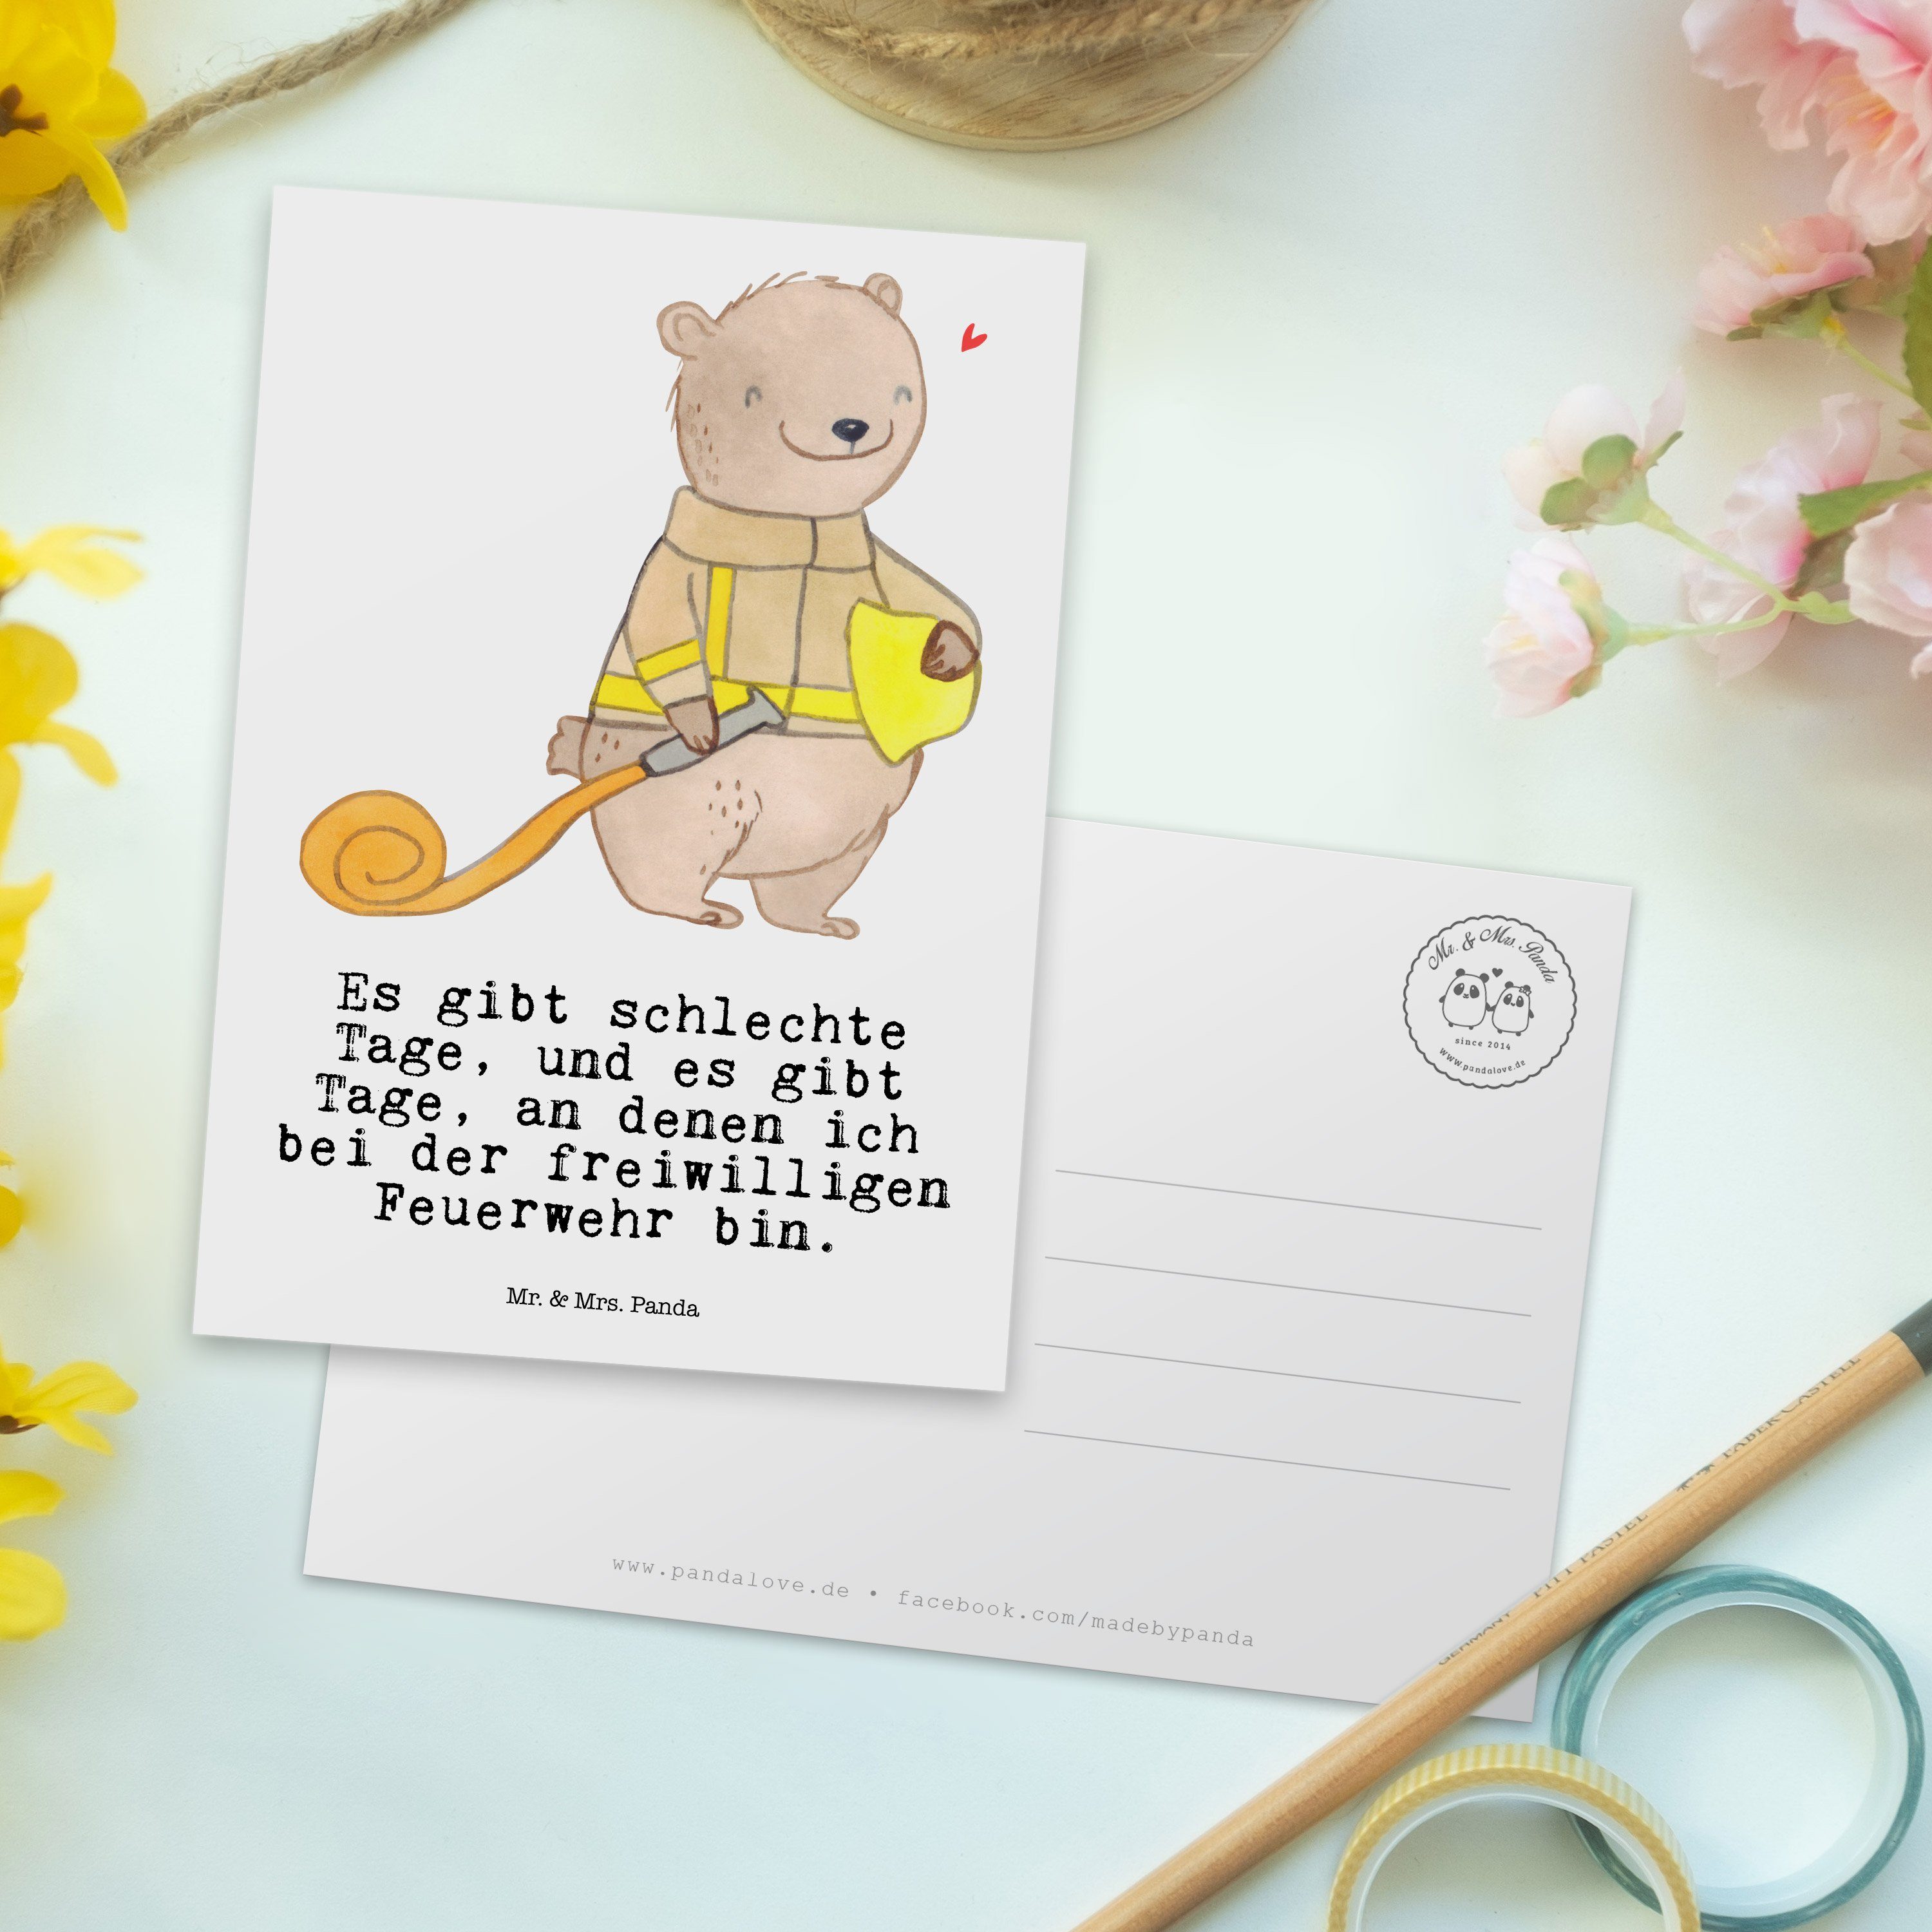 Mr. & Mrs. Panda Postkarte Geschenk, Feuerwehr Tage - Freiwillige Feuerwehrein Weiß Hobby, - Bär